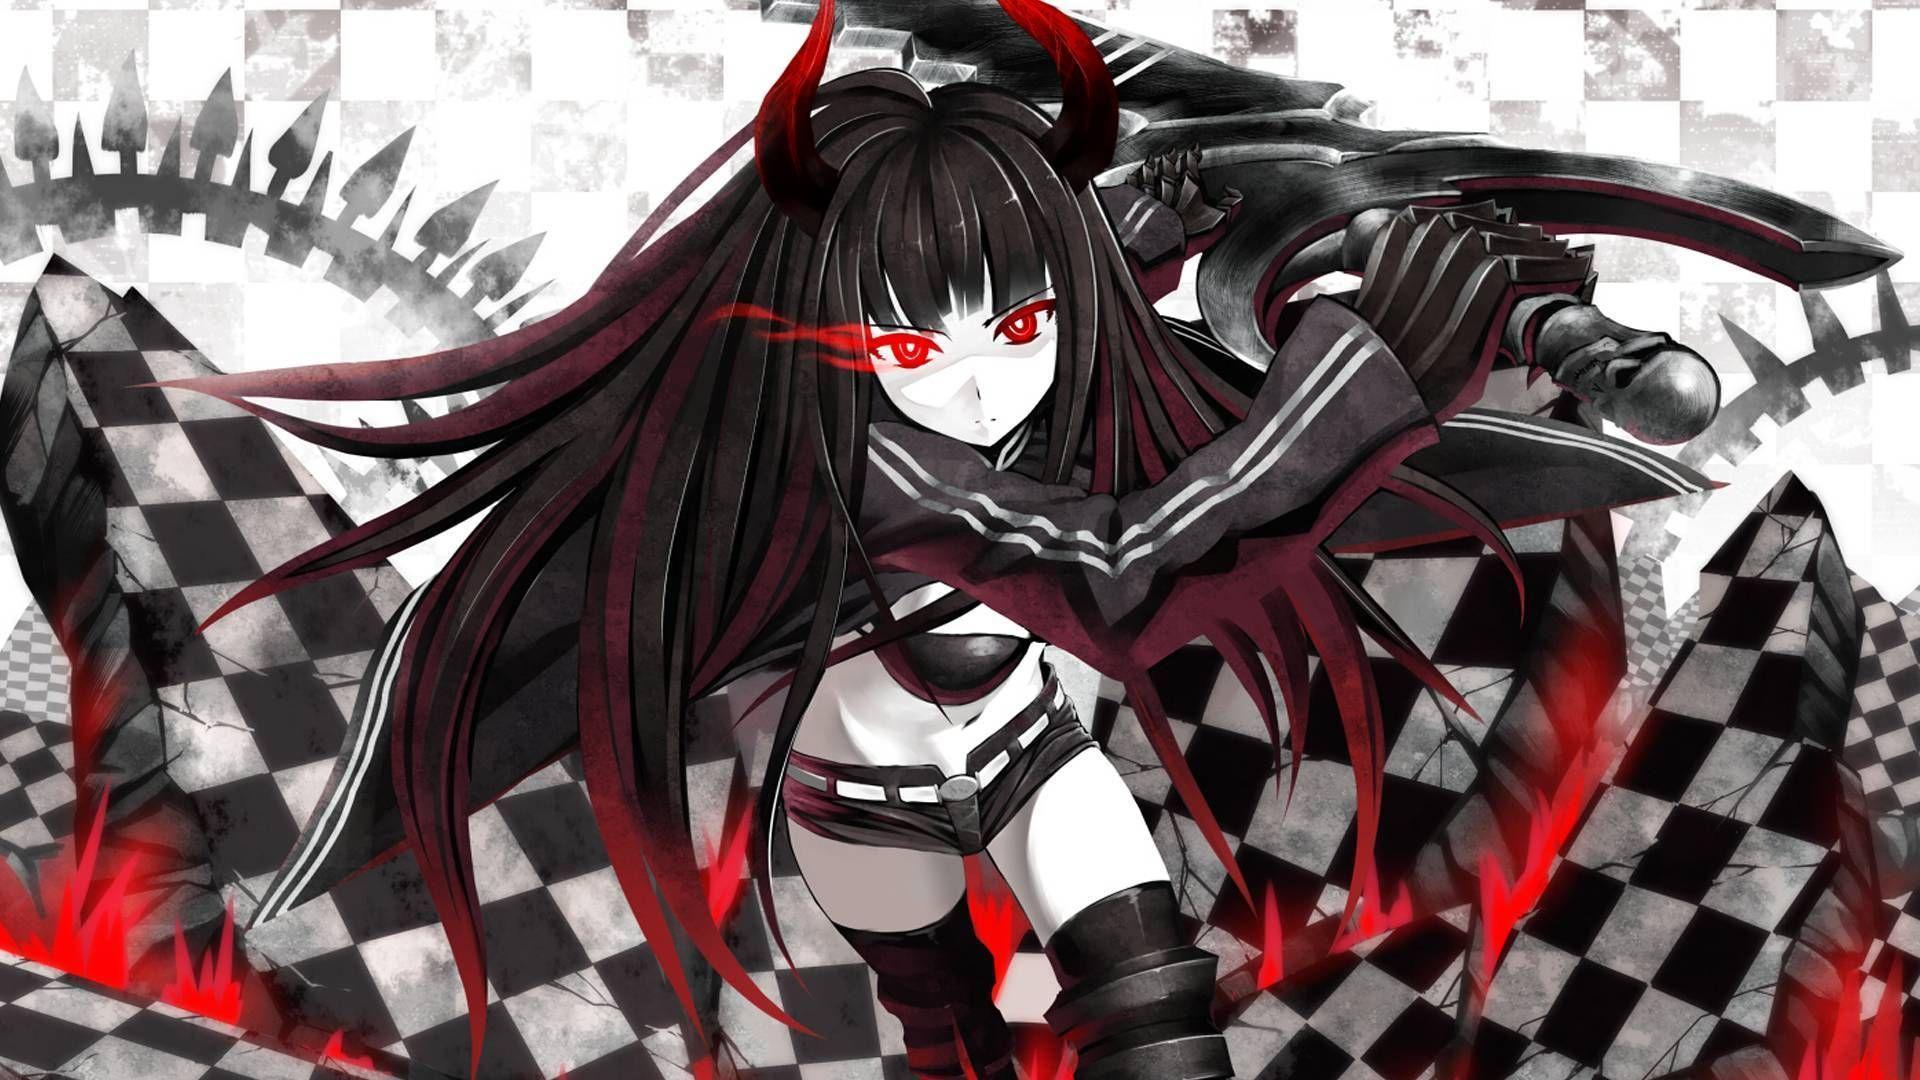 Evil Demon Anime Girl With Sword Wallpaper